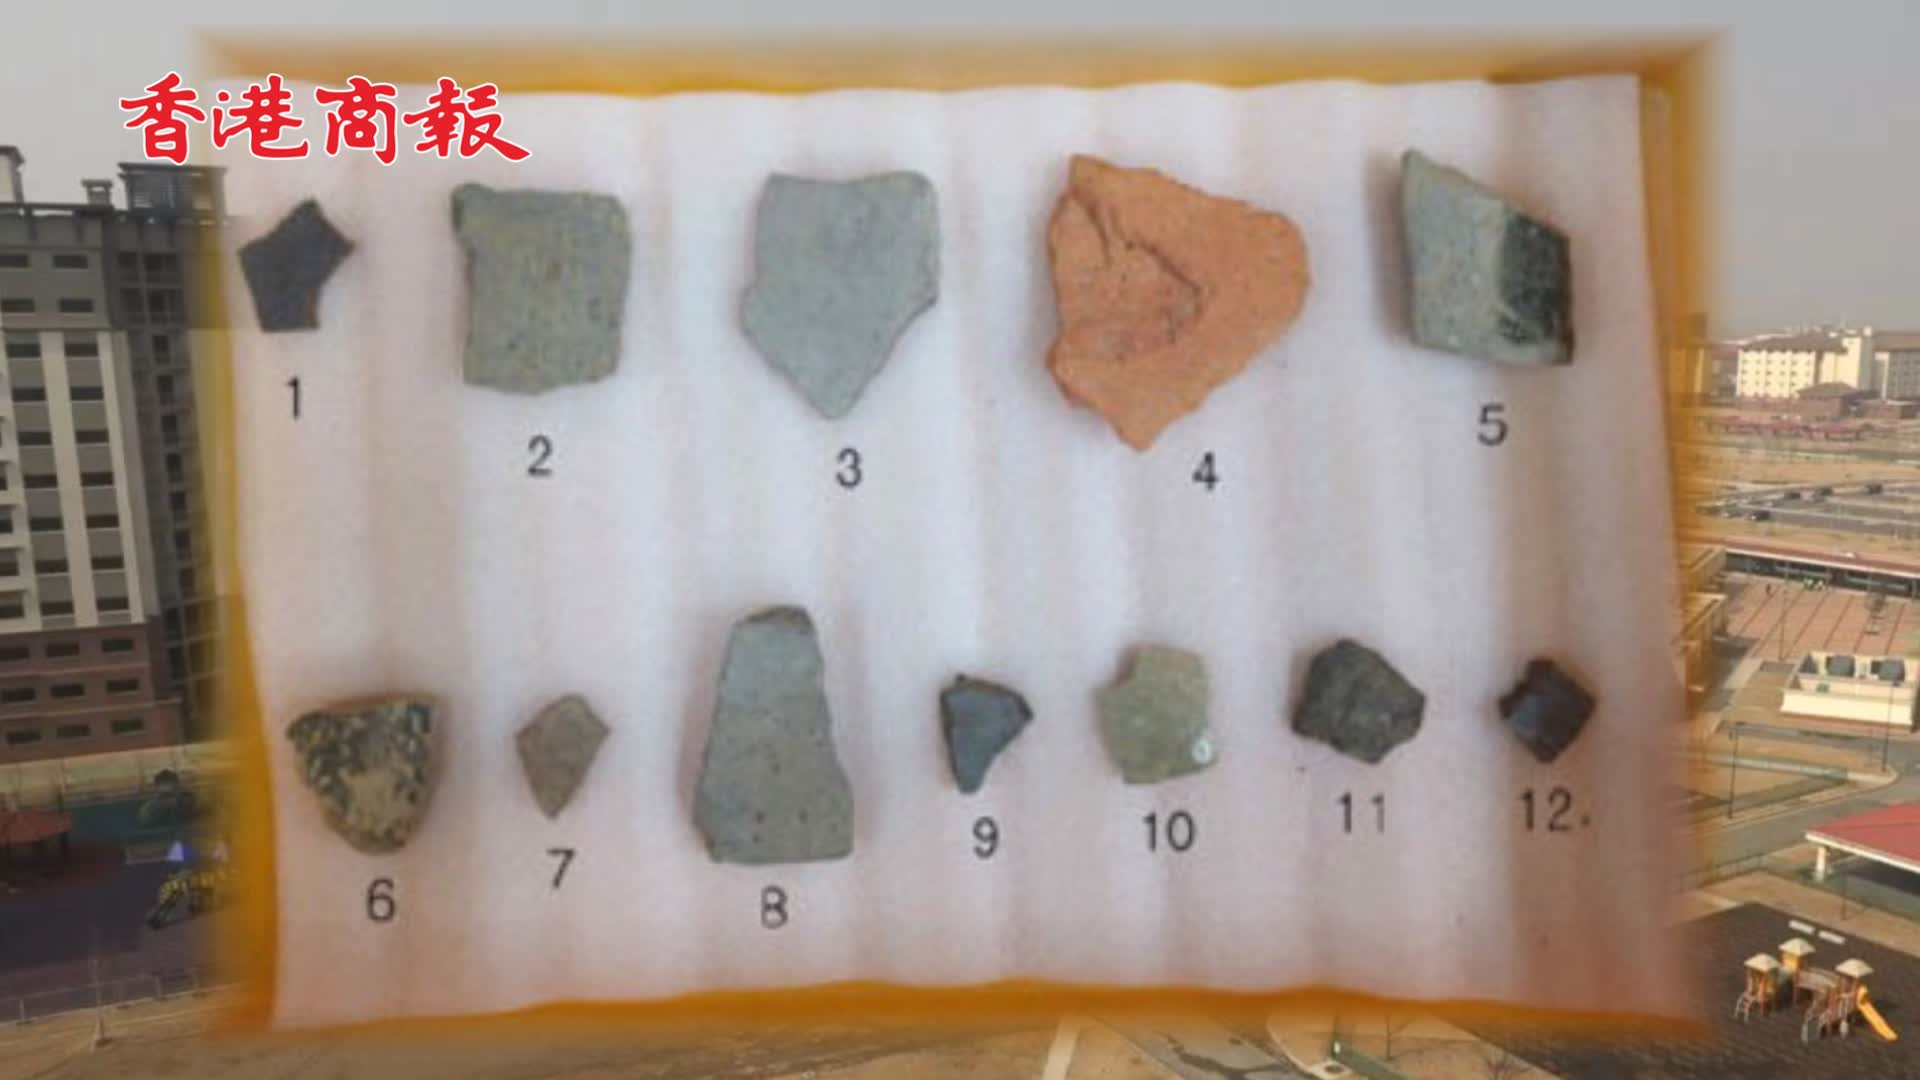 有片 | 韓國宣布從美軍基地出土大量文物：包括1枚彈殼 還有76件古代陶瓷